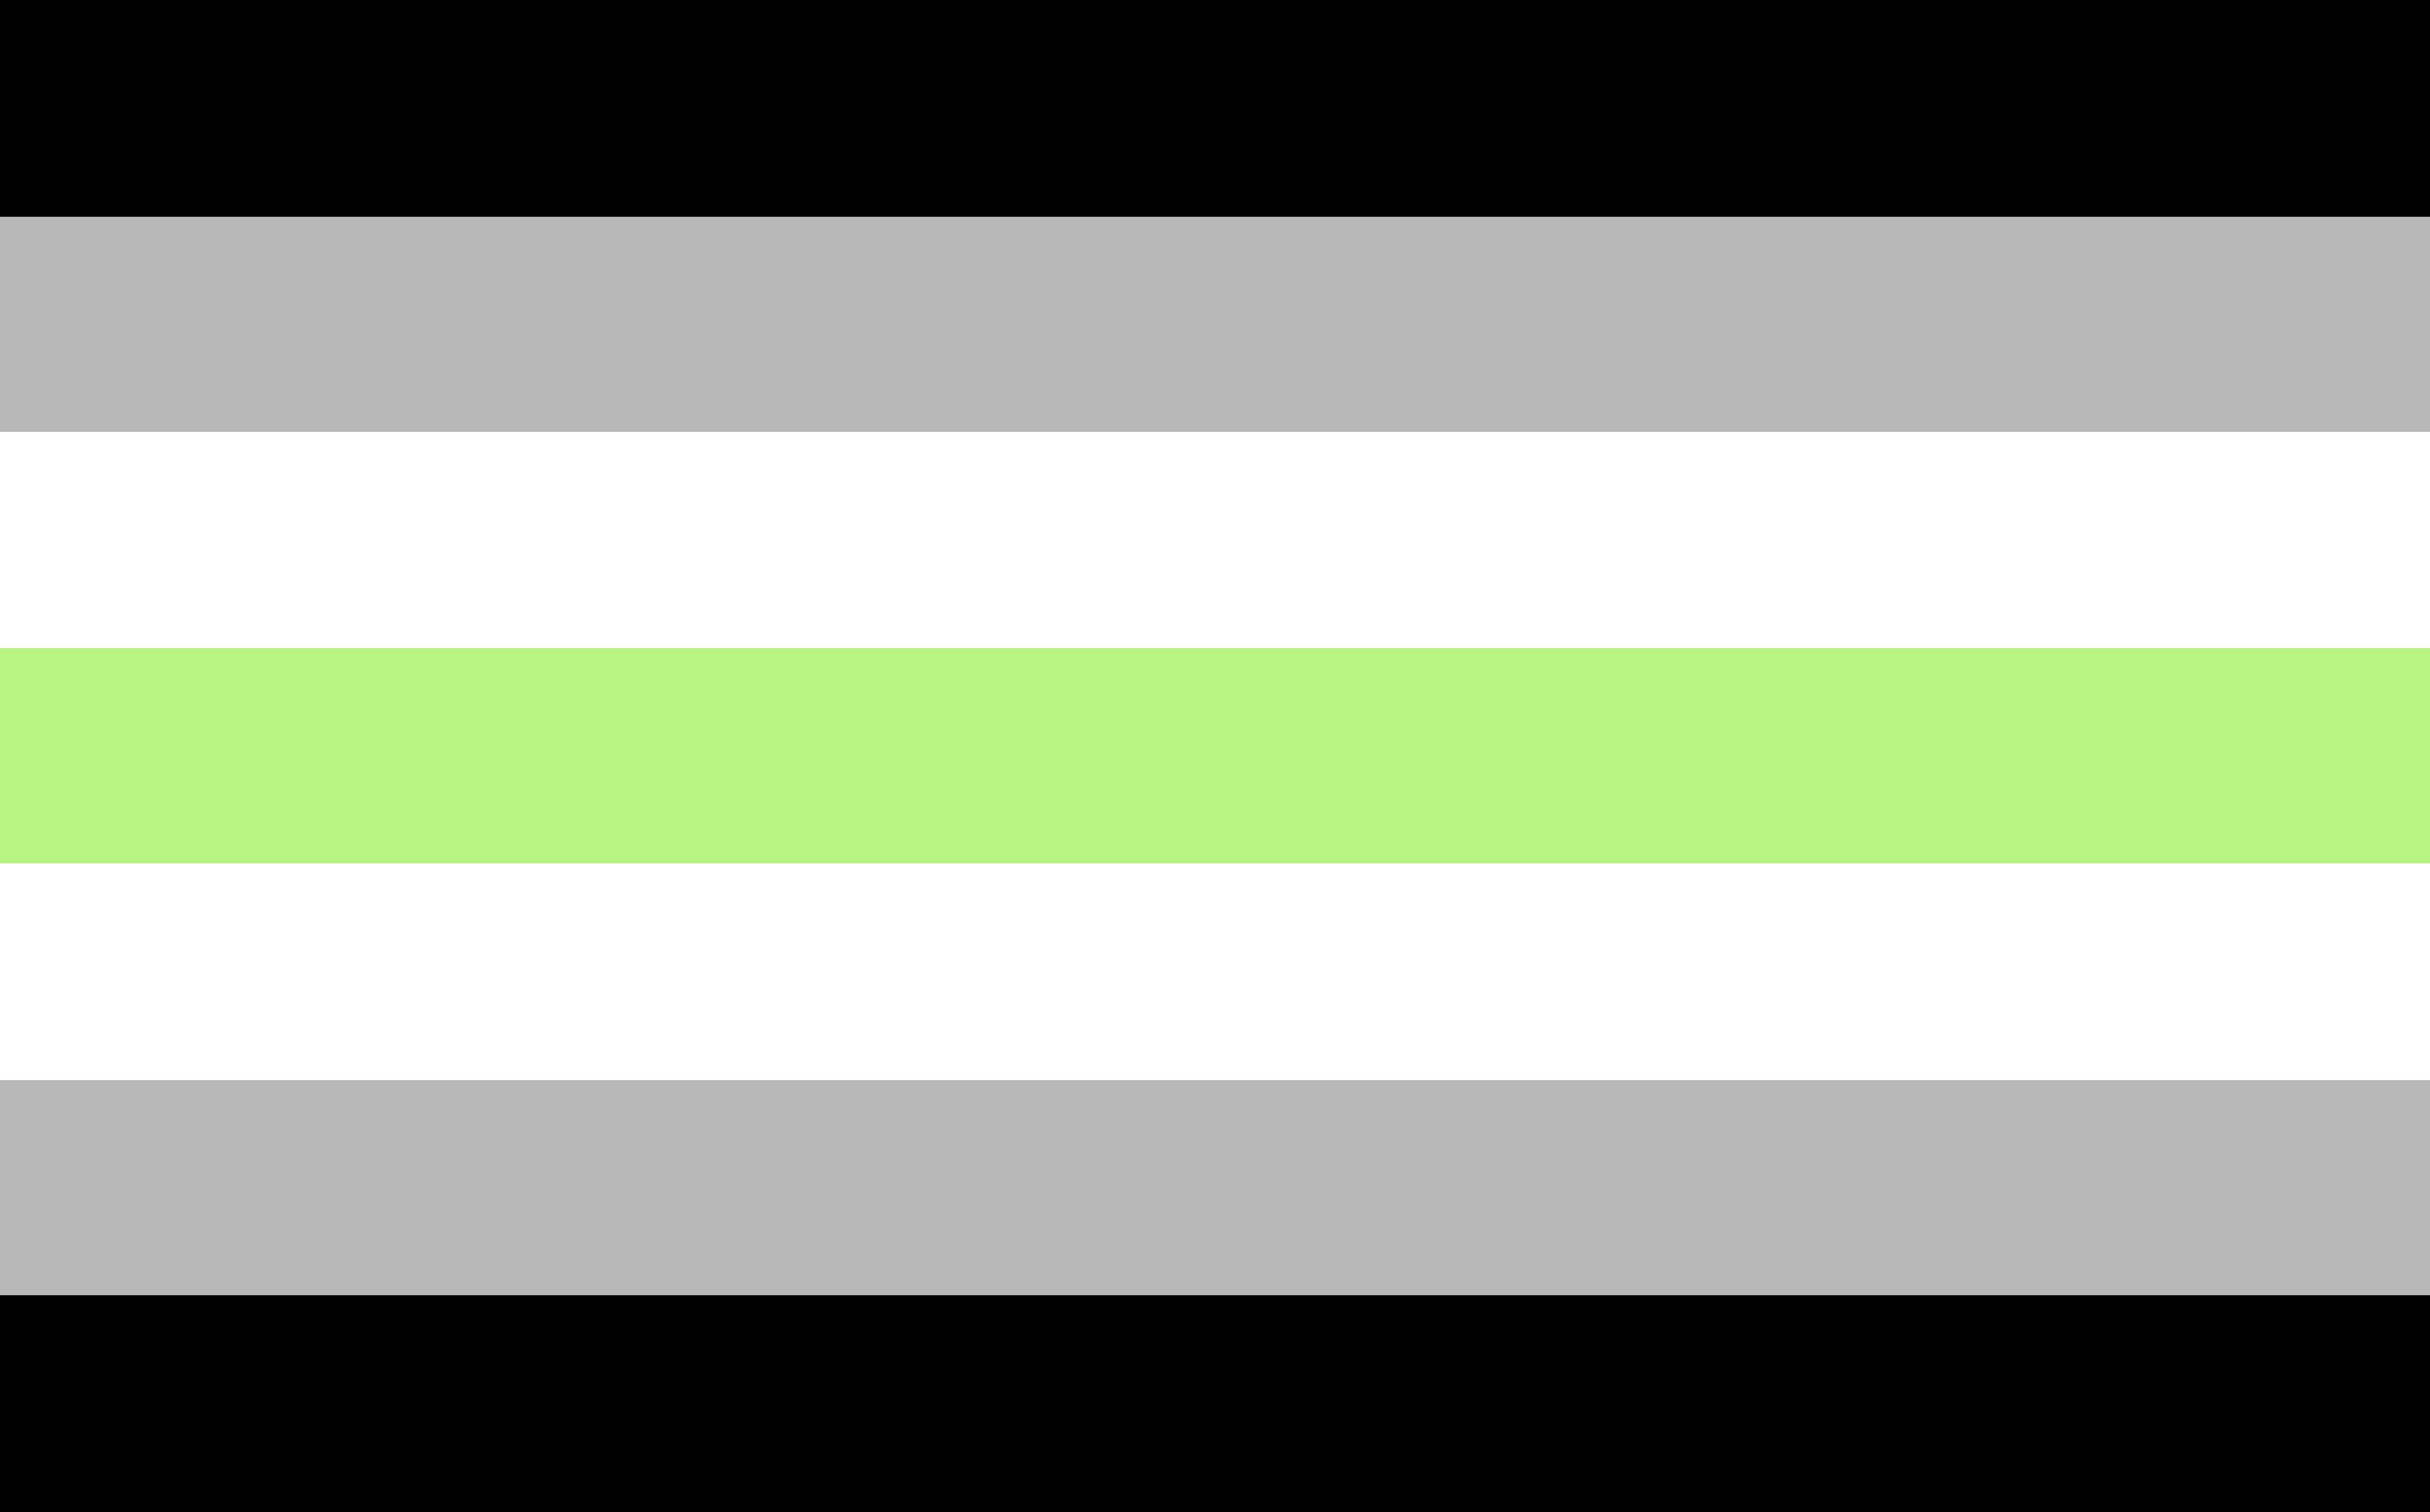 Bandeira agênero com as cores branca, cinza, verde e preto.